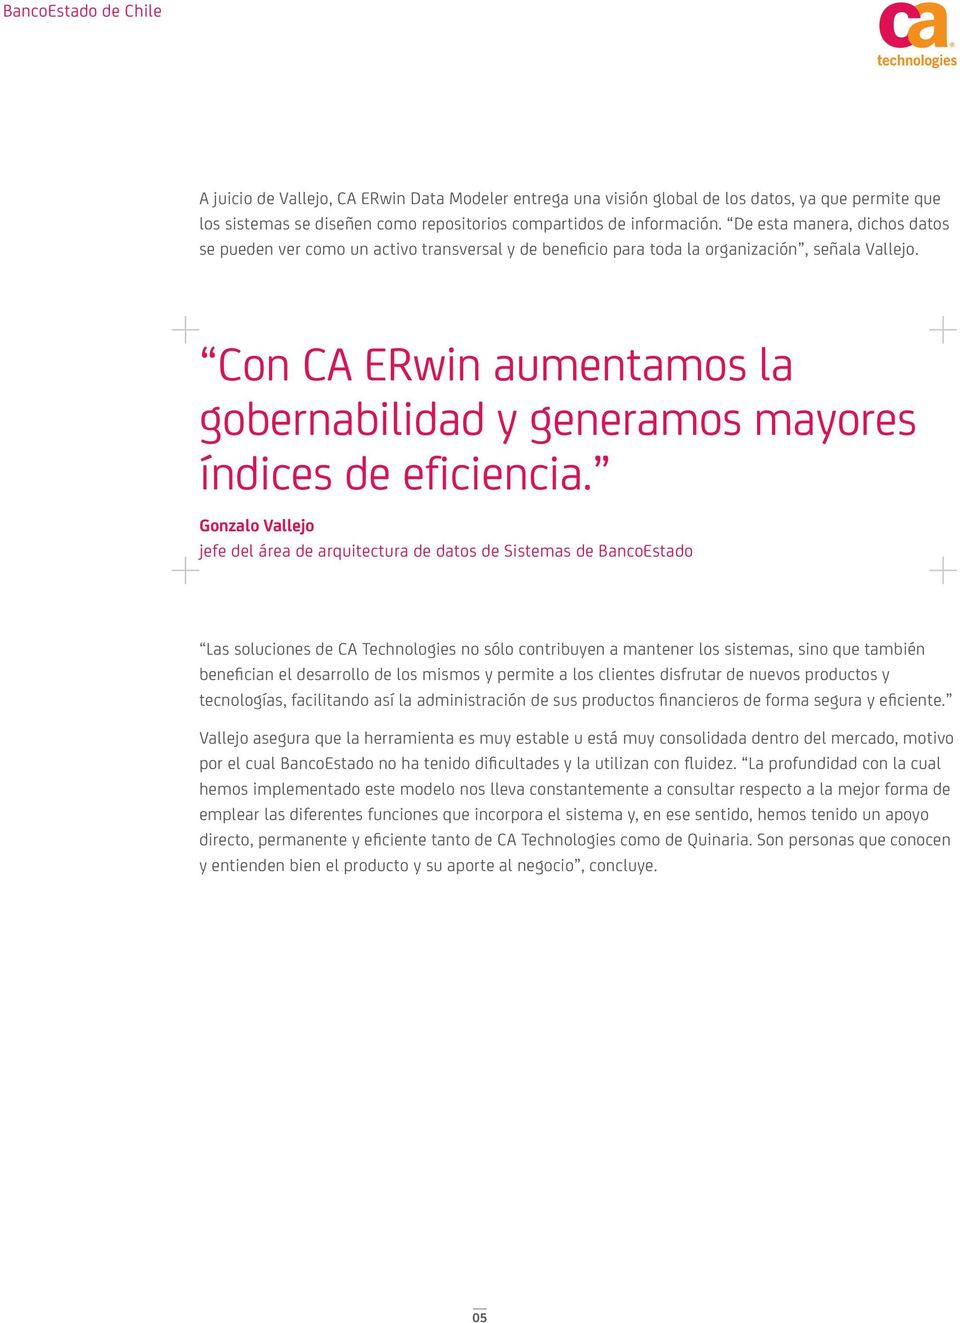 Con CA ERwin aumentamos la gobernabilidad y generamos mayores índices de eficiencia.